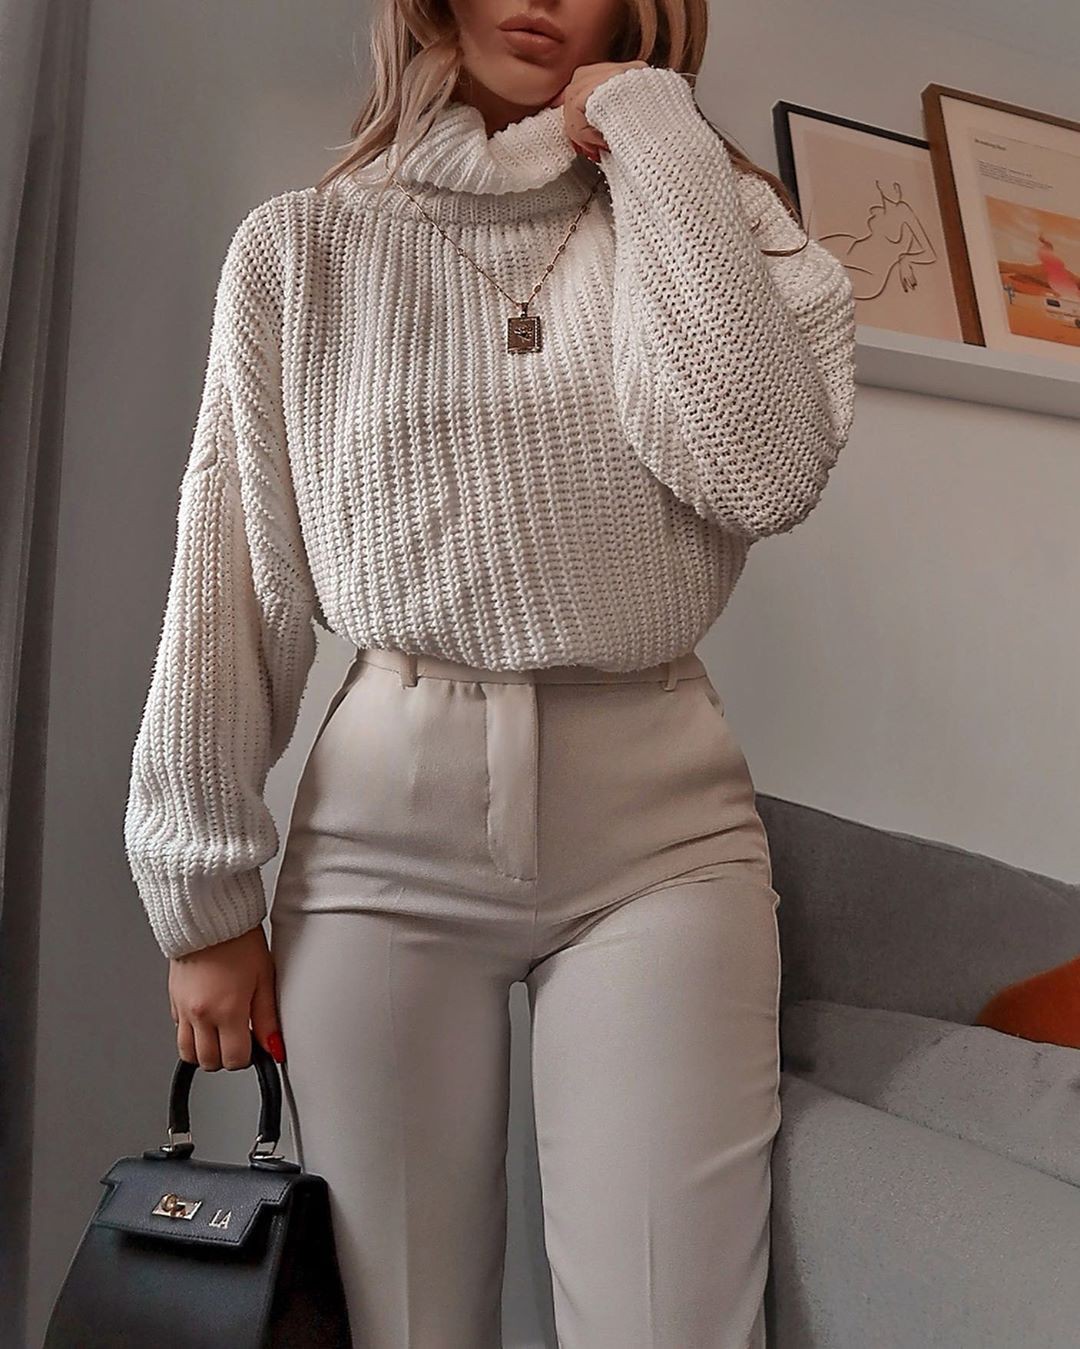 Conjunto de color blanco con suéter, jeans, falda